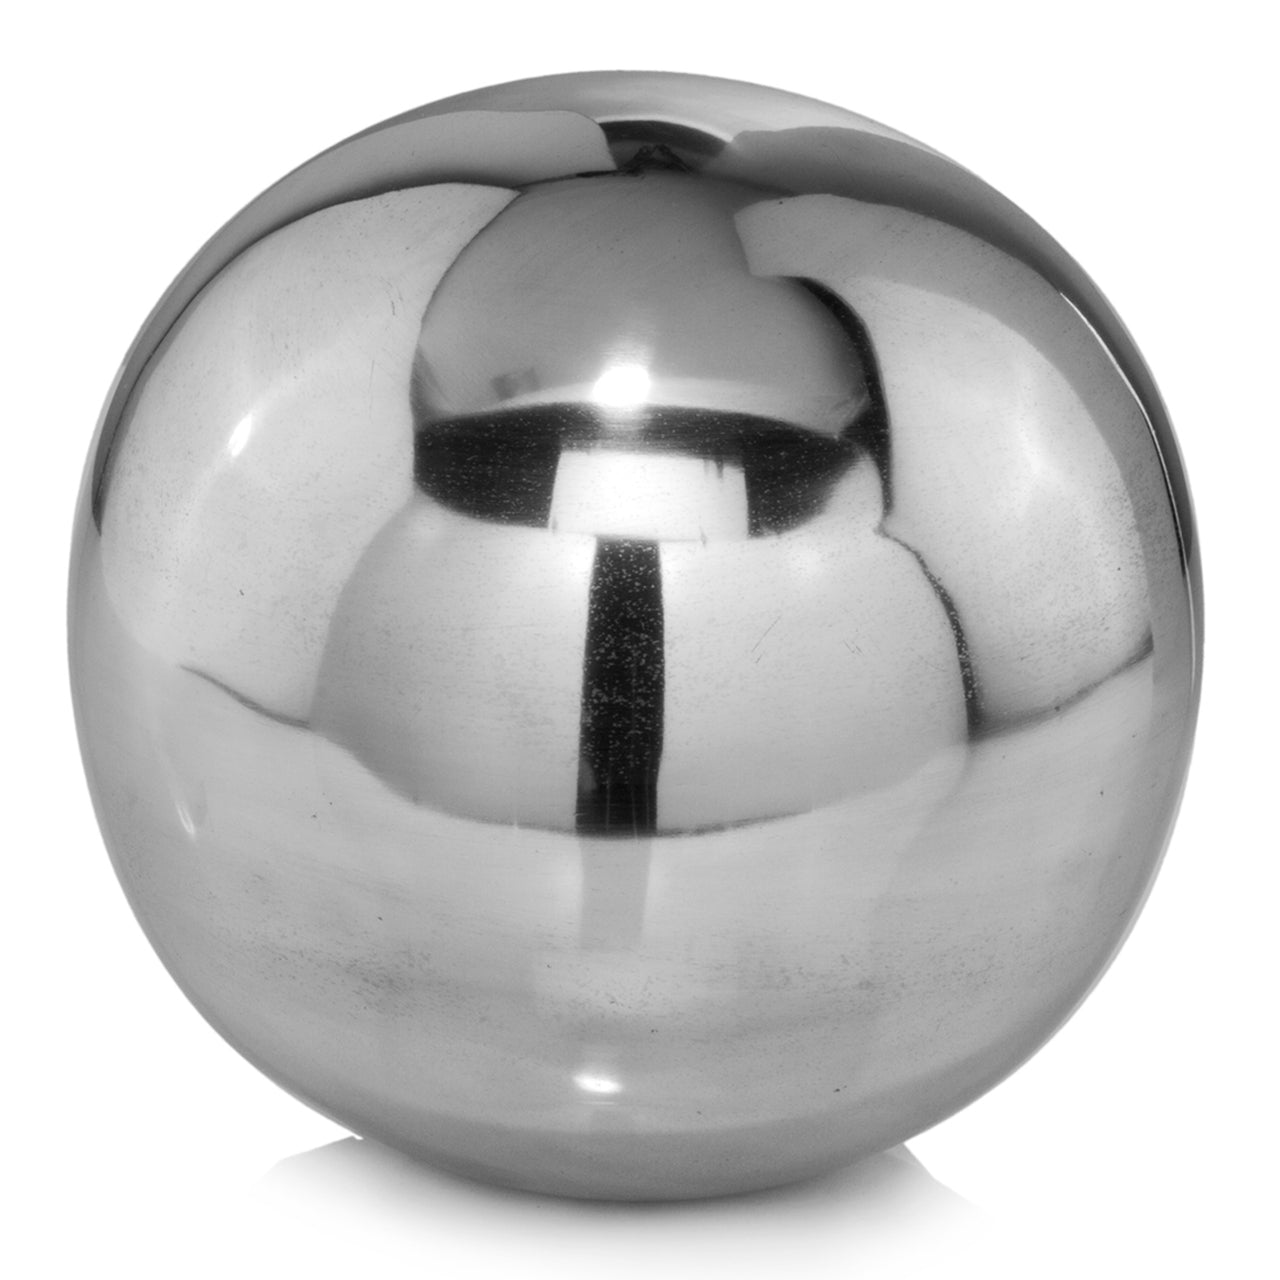 Shiny Polished Aluminum Spheres Set of Two